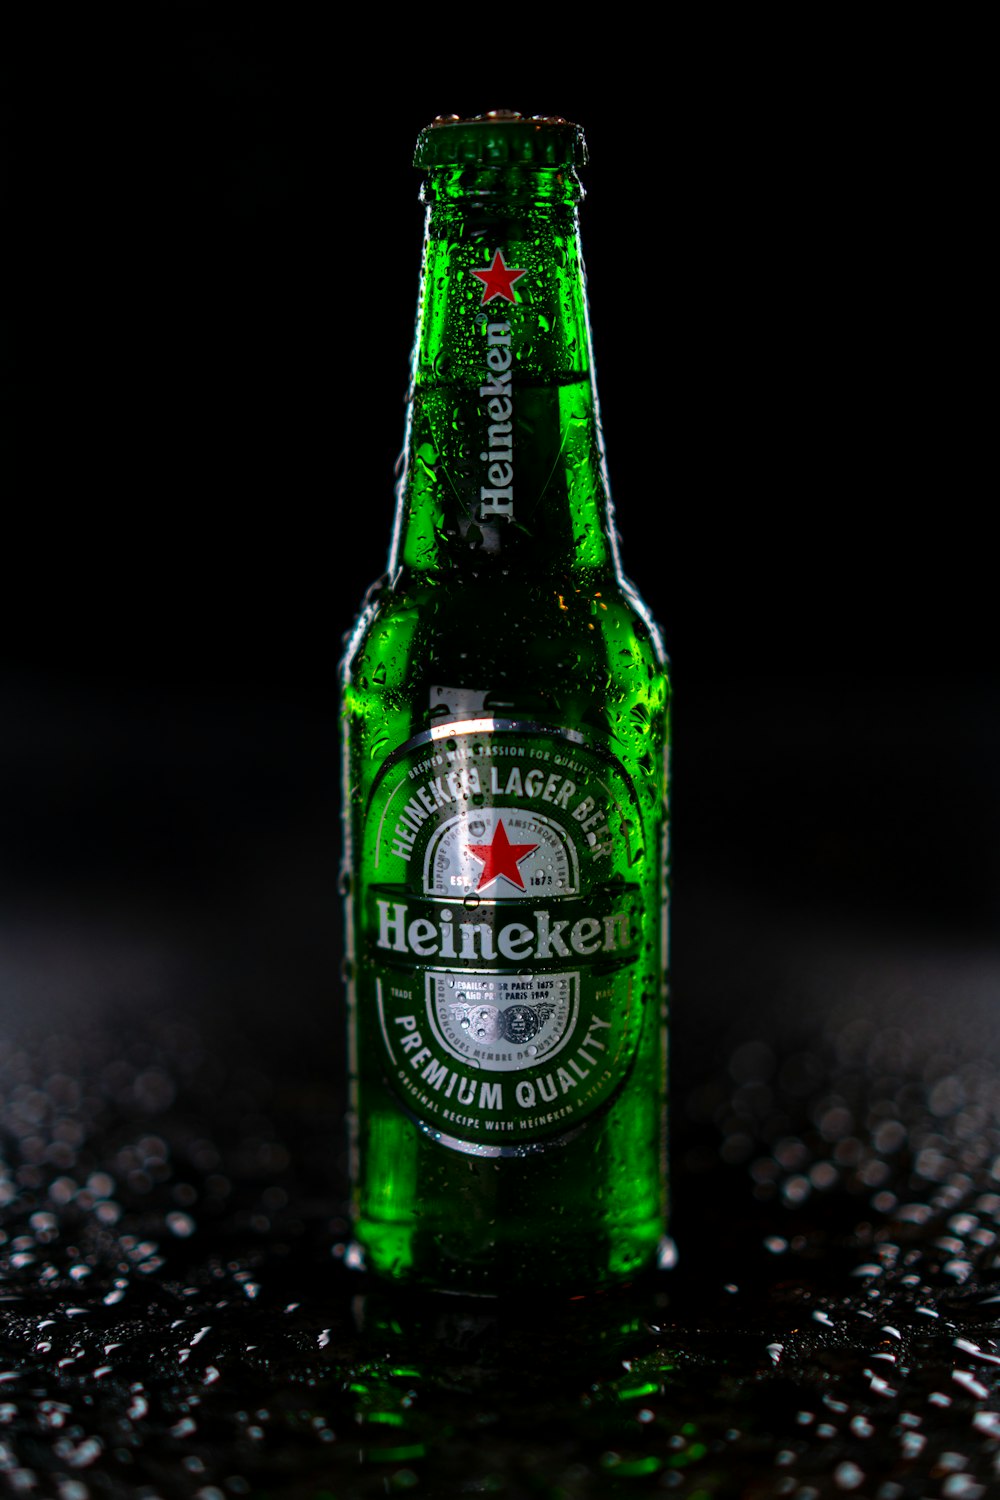 Heinekenflasche auf schwarz-weißem Marmortisch